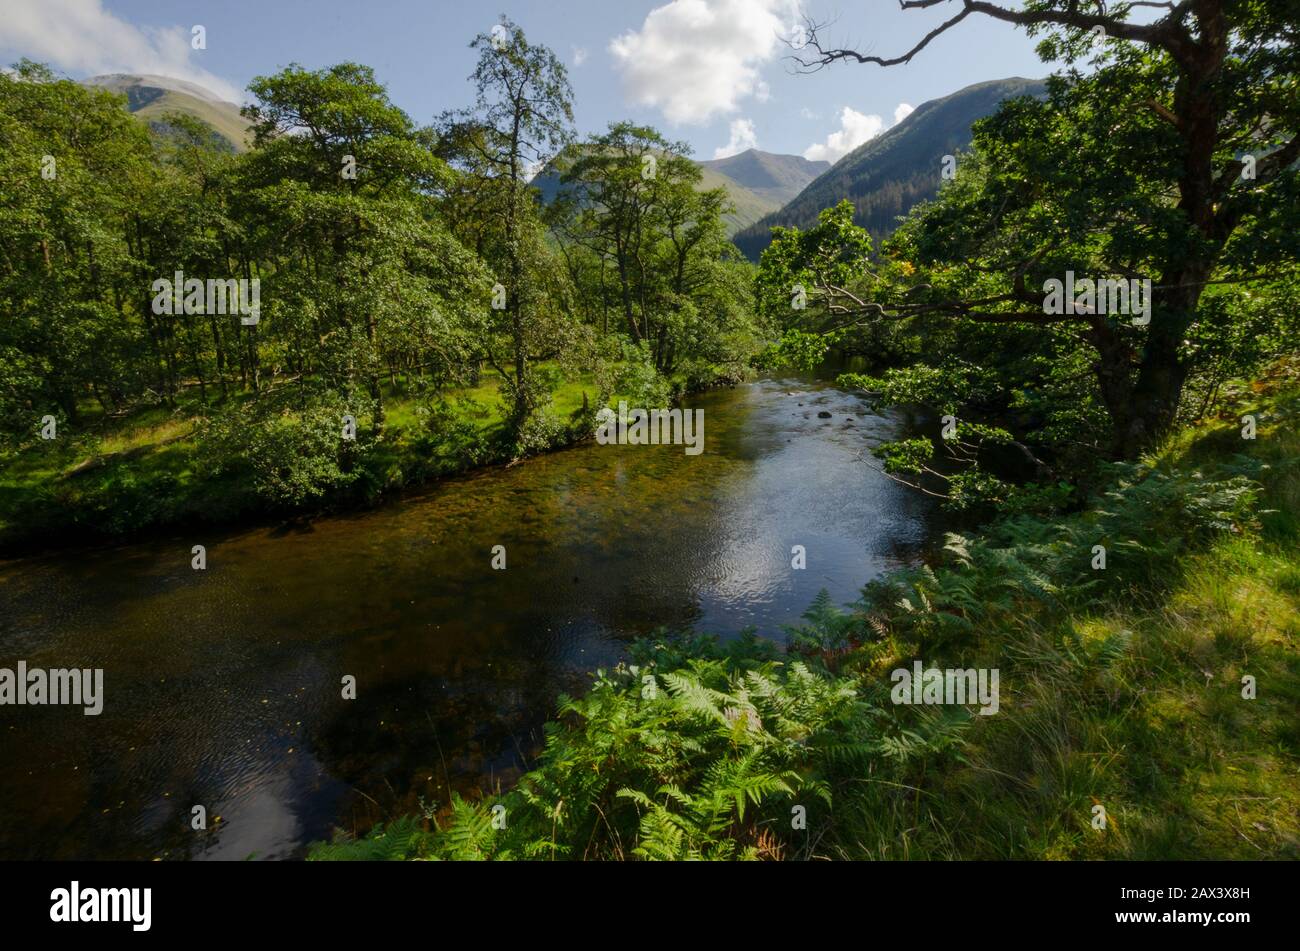 Paysage de la rivière Nevis sous Ben Nevis dans les Highlands écossais Ecosse Royaume-Uni Banque D'Images